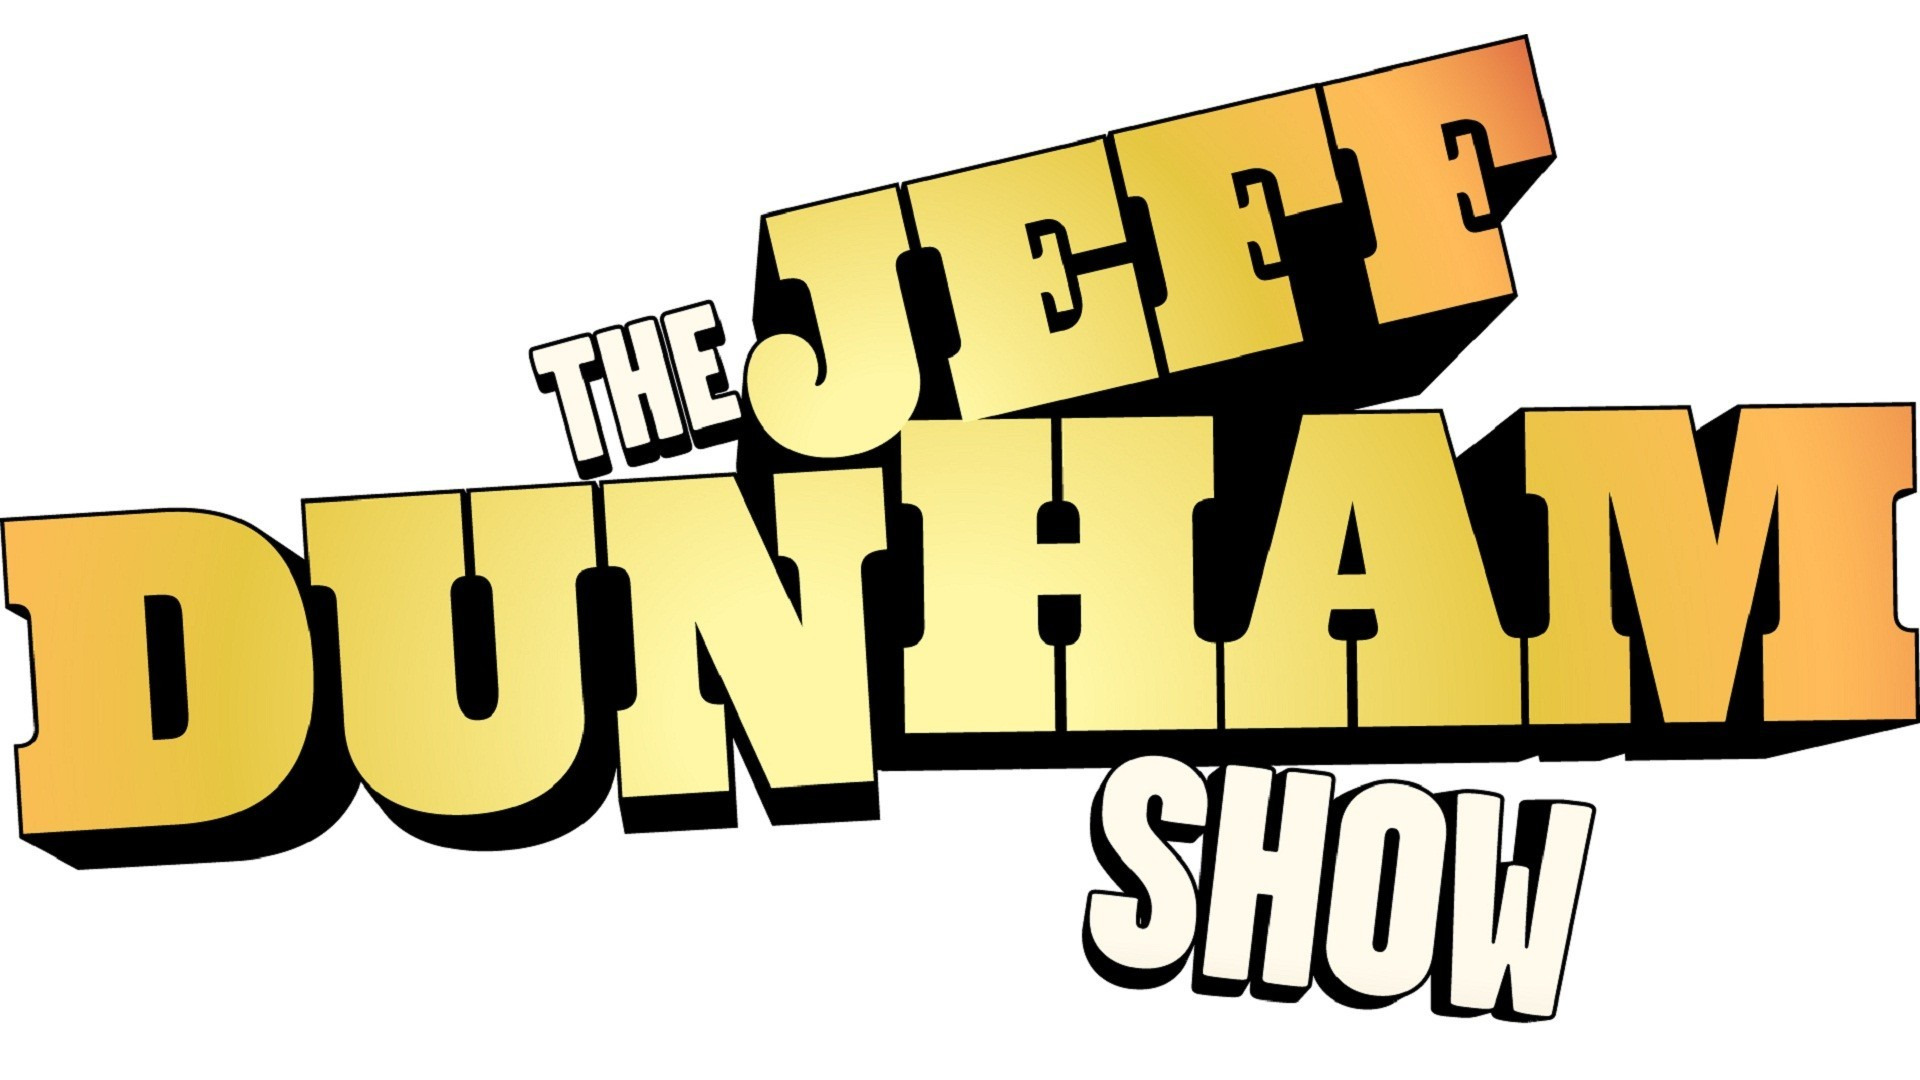 Show The Jeff Dunham Show